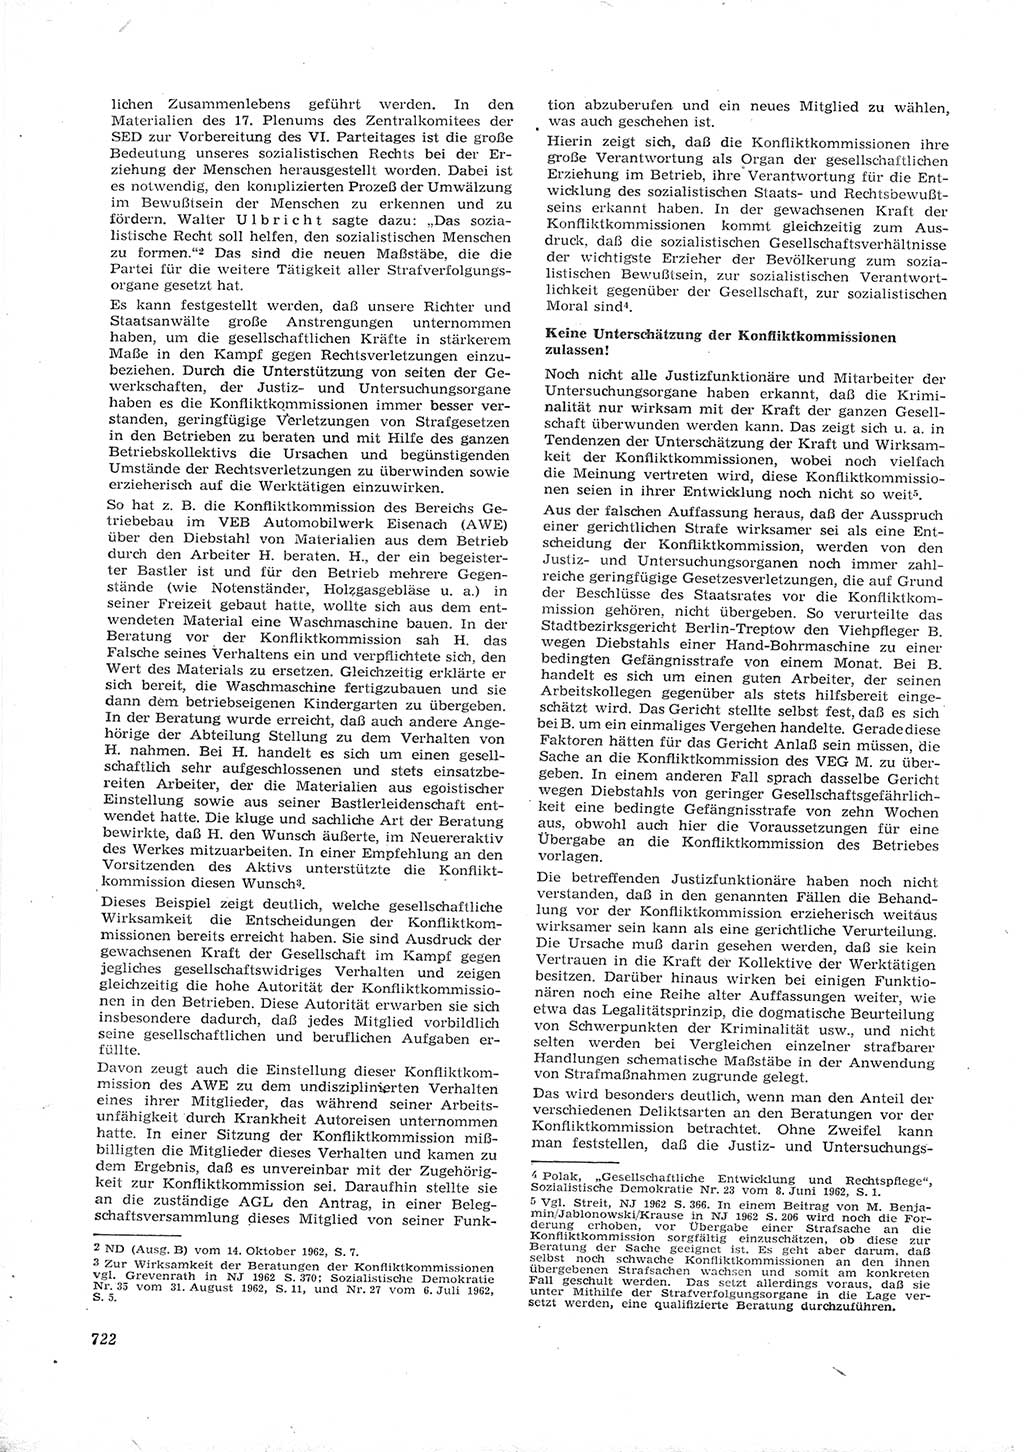 Neue Justiz (NJ), Zeitschrift für Recht und Rechtswissenschaft [Deutsche Demokratische Republik (DDR)], 16. Jahrgang 1962, Seite 722 (NJ DDR 1962, S. 722)